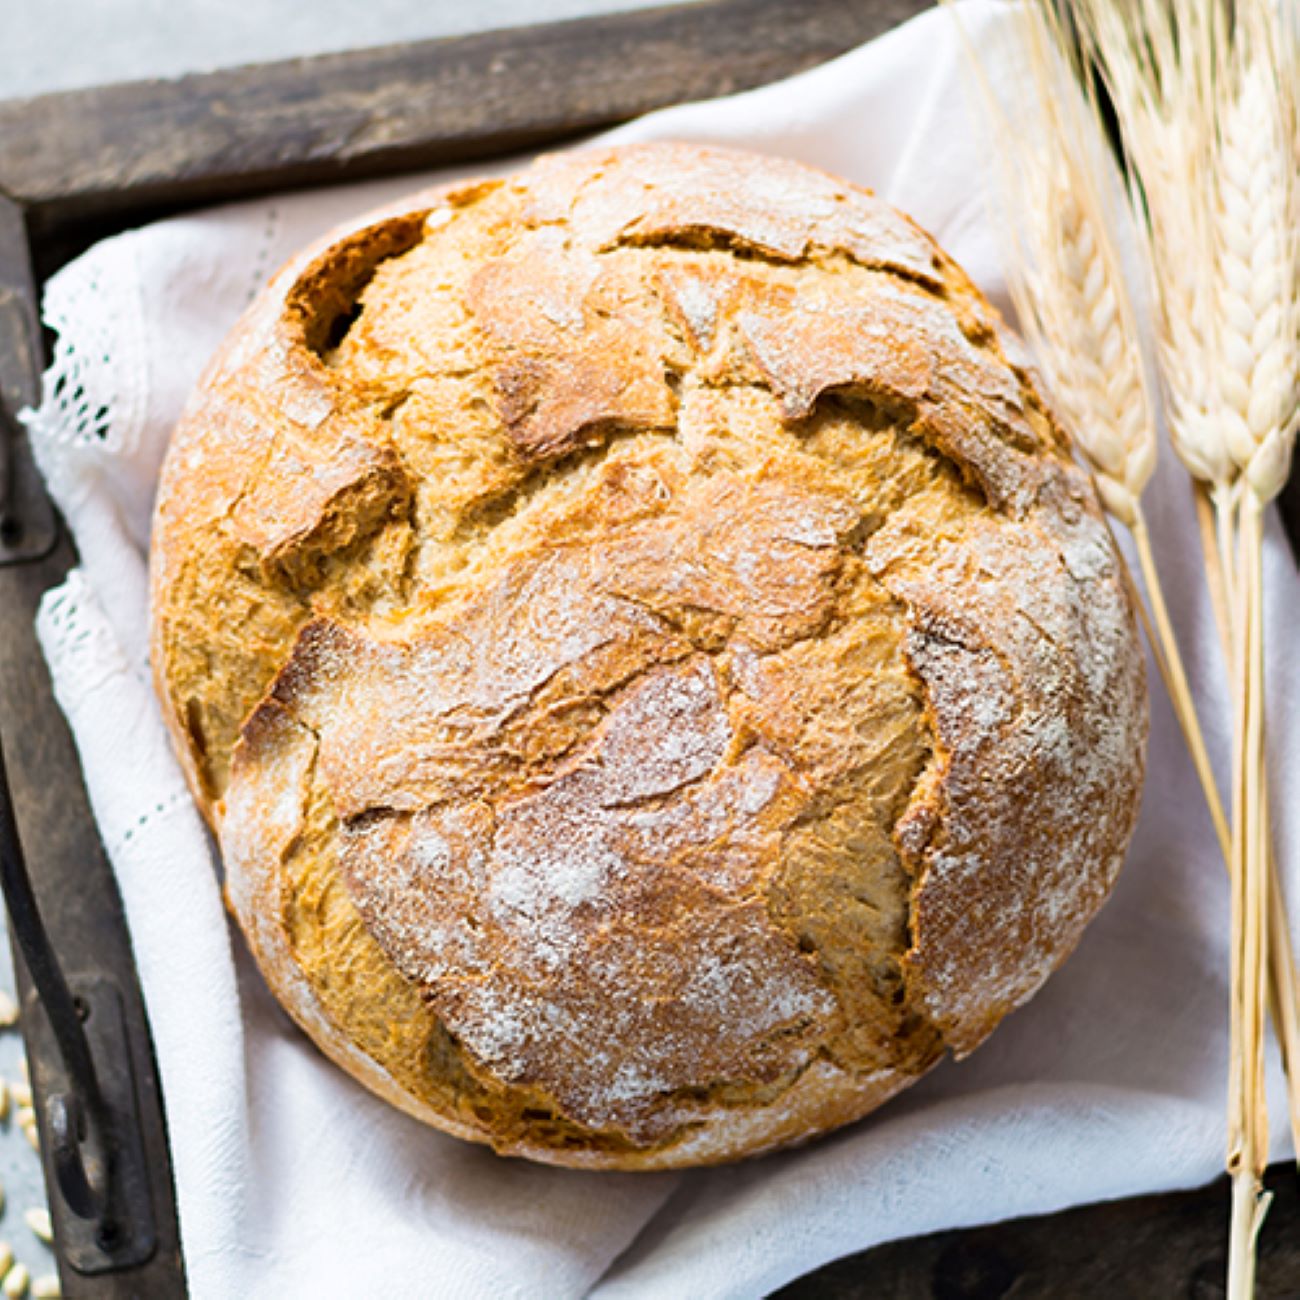 Pšeničný chléb je zobrazen shora na bílém plátně a zdoben pšenicí.